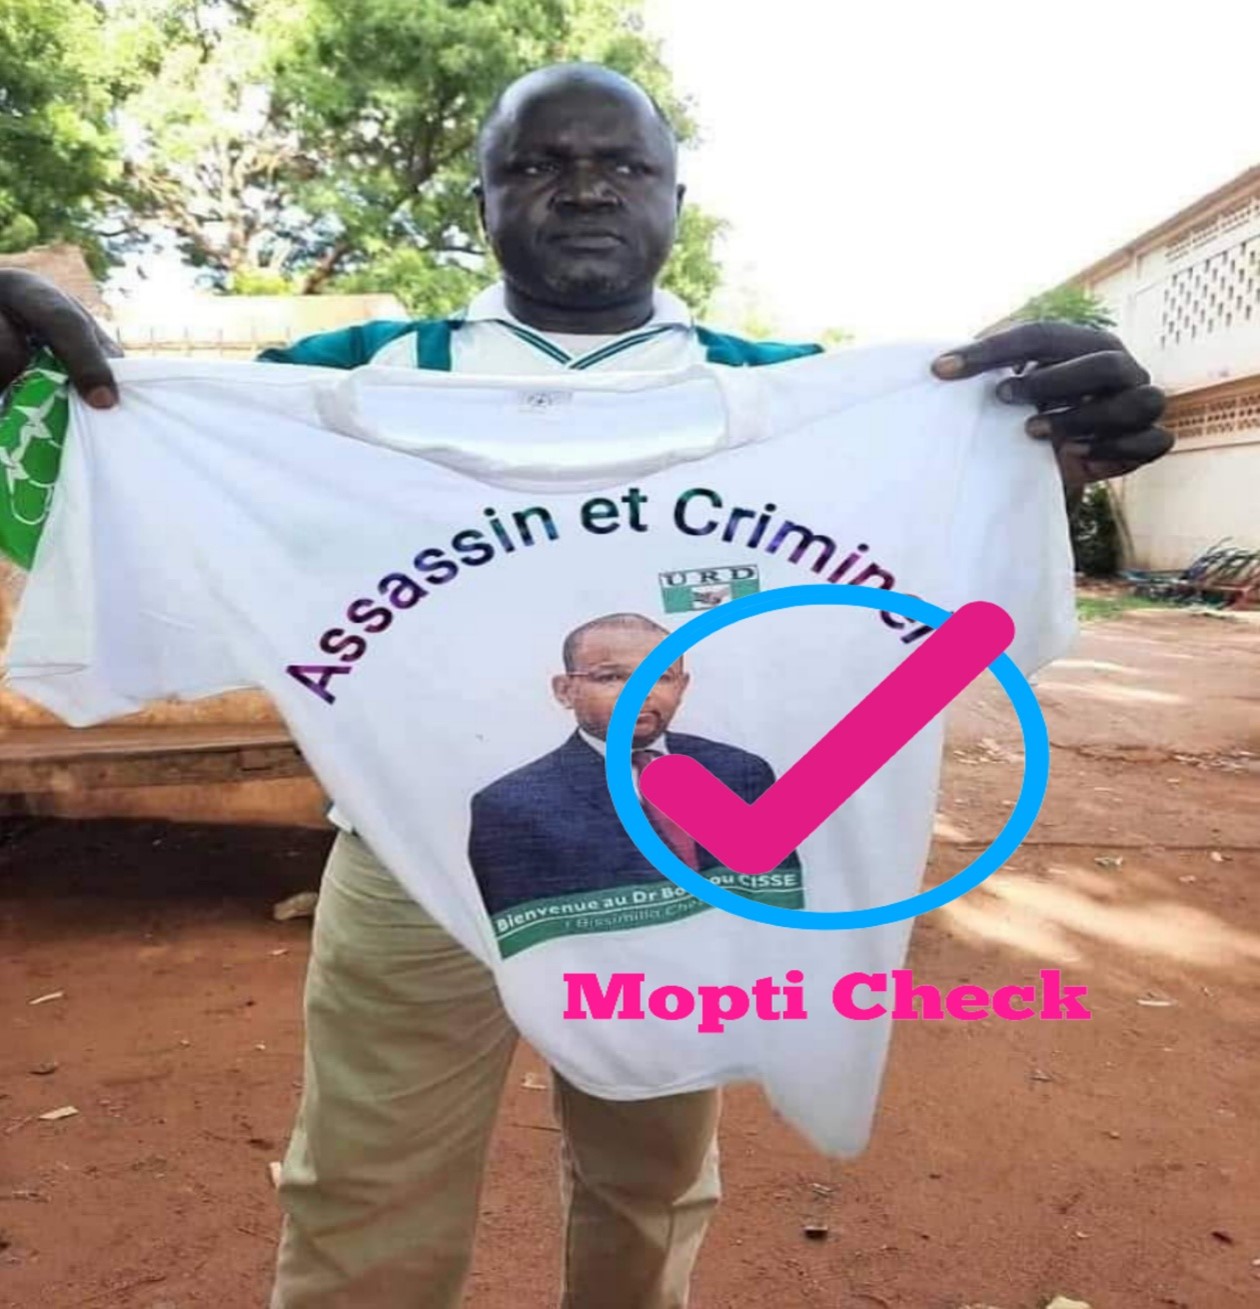 Mopti : Non, cet homme n'a pas traité Boubou Cissé d'assassin et criminel